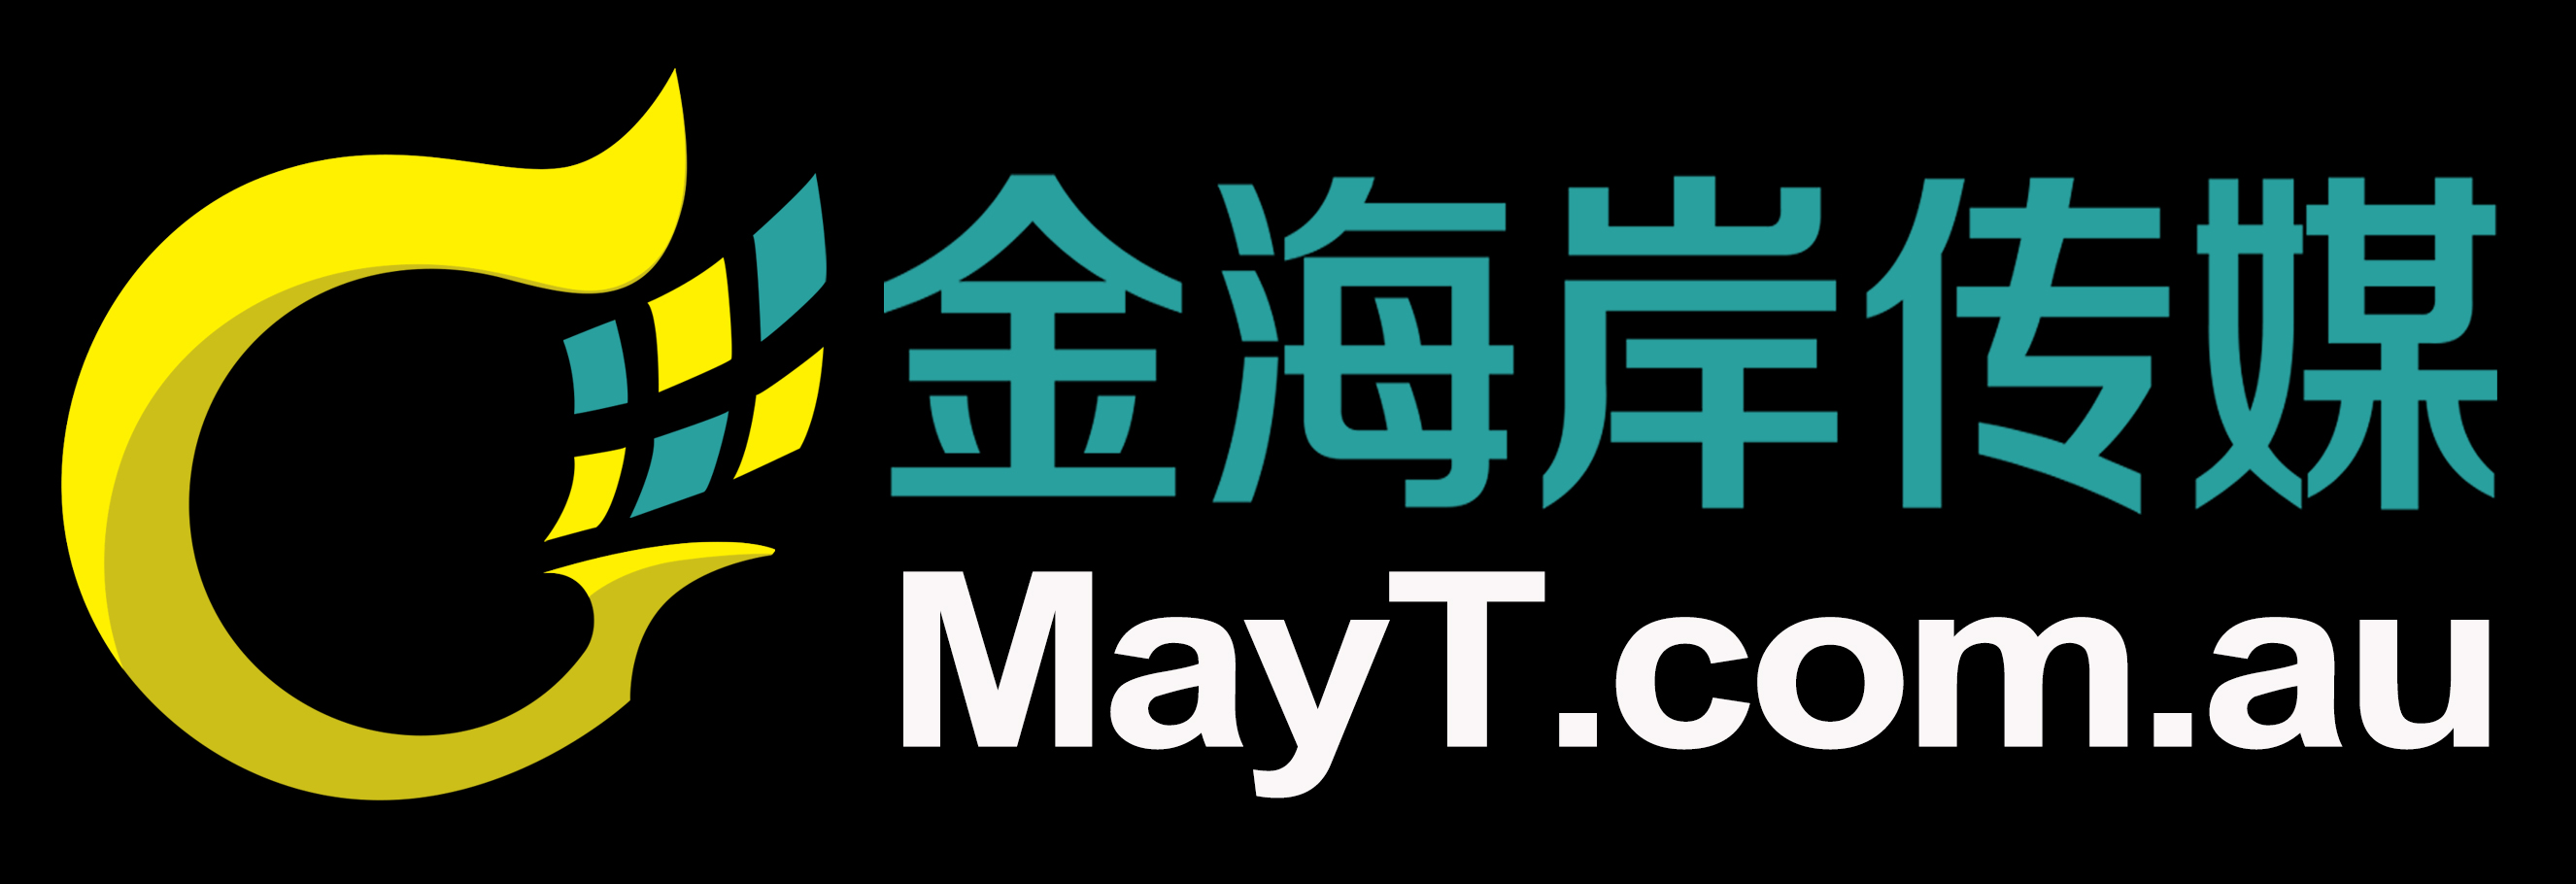 MayTmedia Logo 周杰伦《嘉年华》世界巡回演唱会 – 澳洲悉尼站 延期